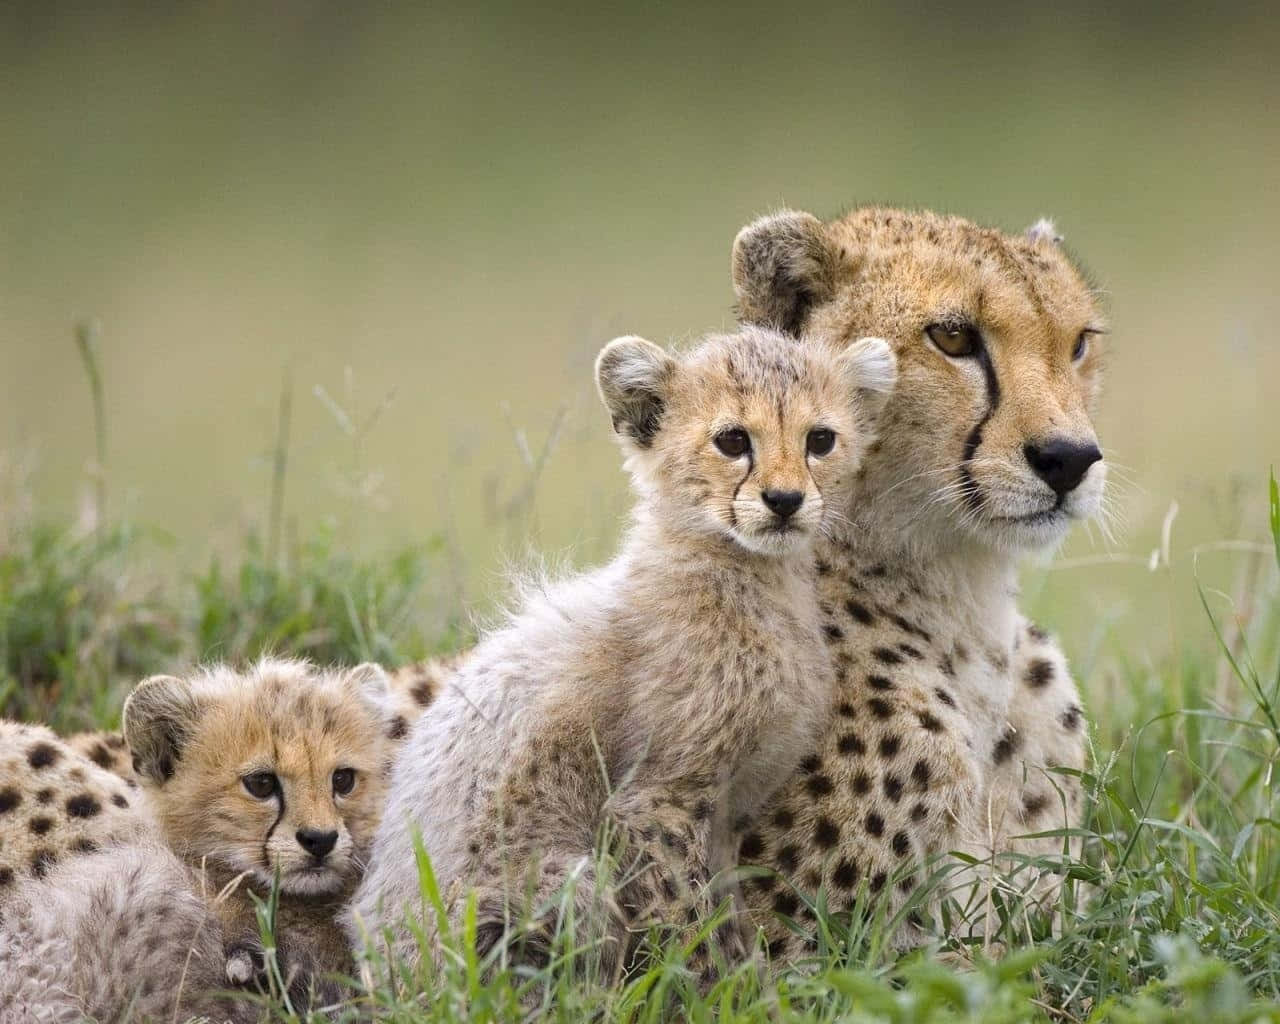 Vildedyr: Billede Af Gepardfamilie På Græsplæne.